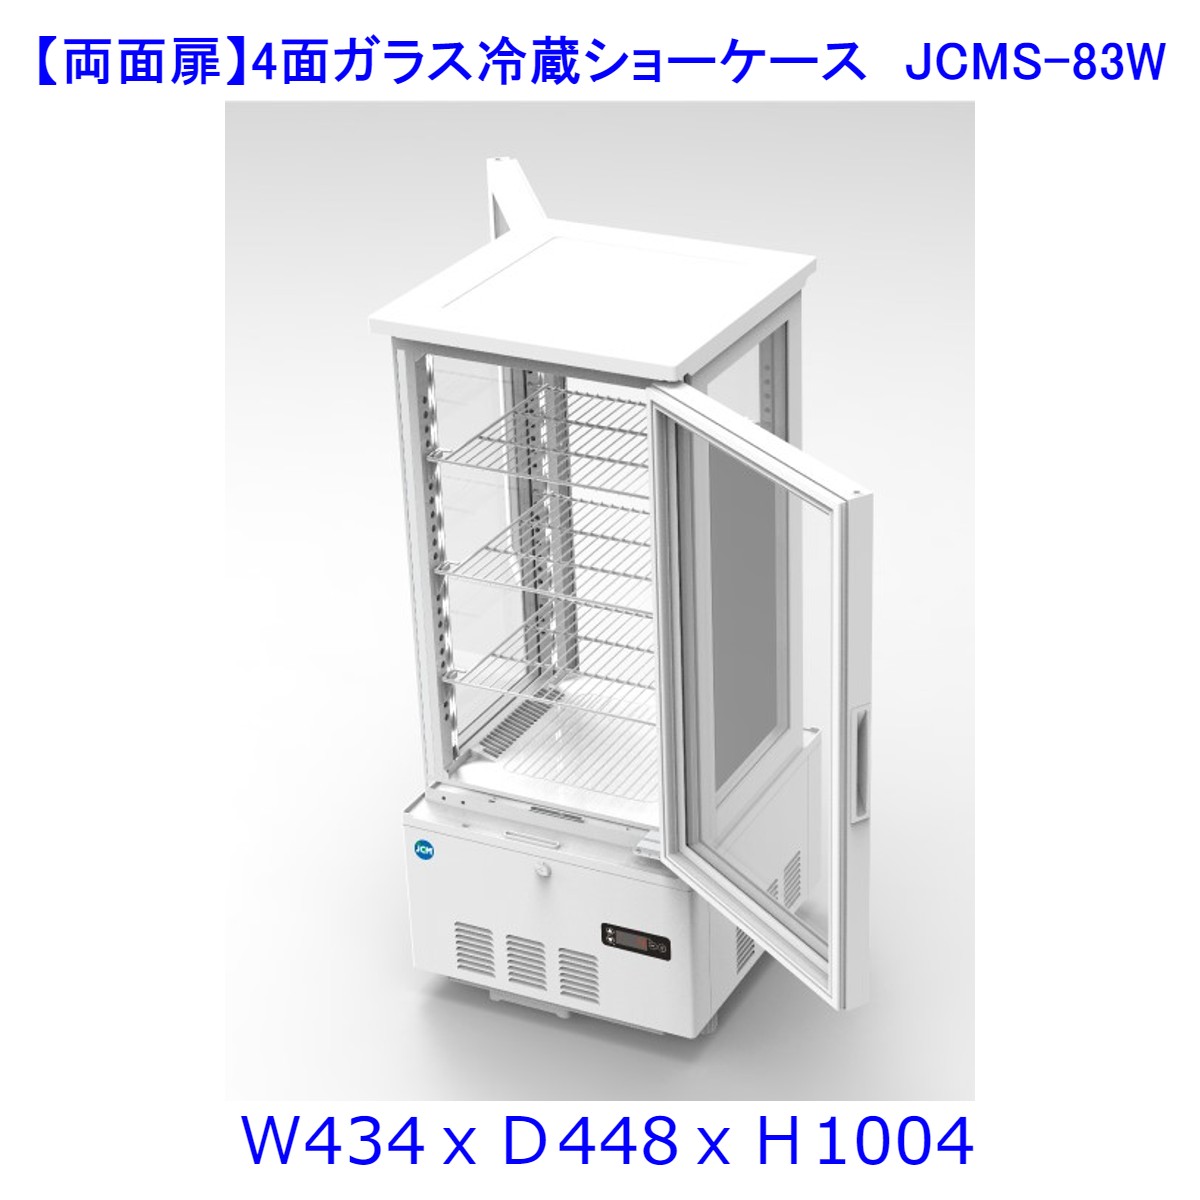 【送料無料】【新商品・未使用】(両面扉)業務用 4面ガラス 冷蔵ショーケース 83L 冷蔵庫 大容量タイプ